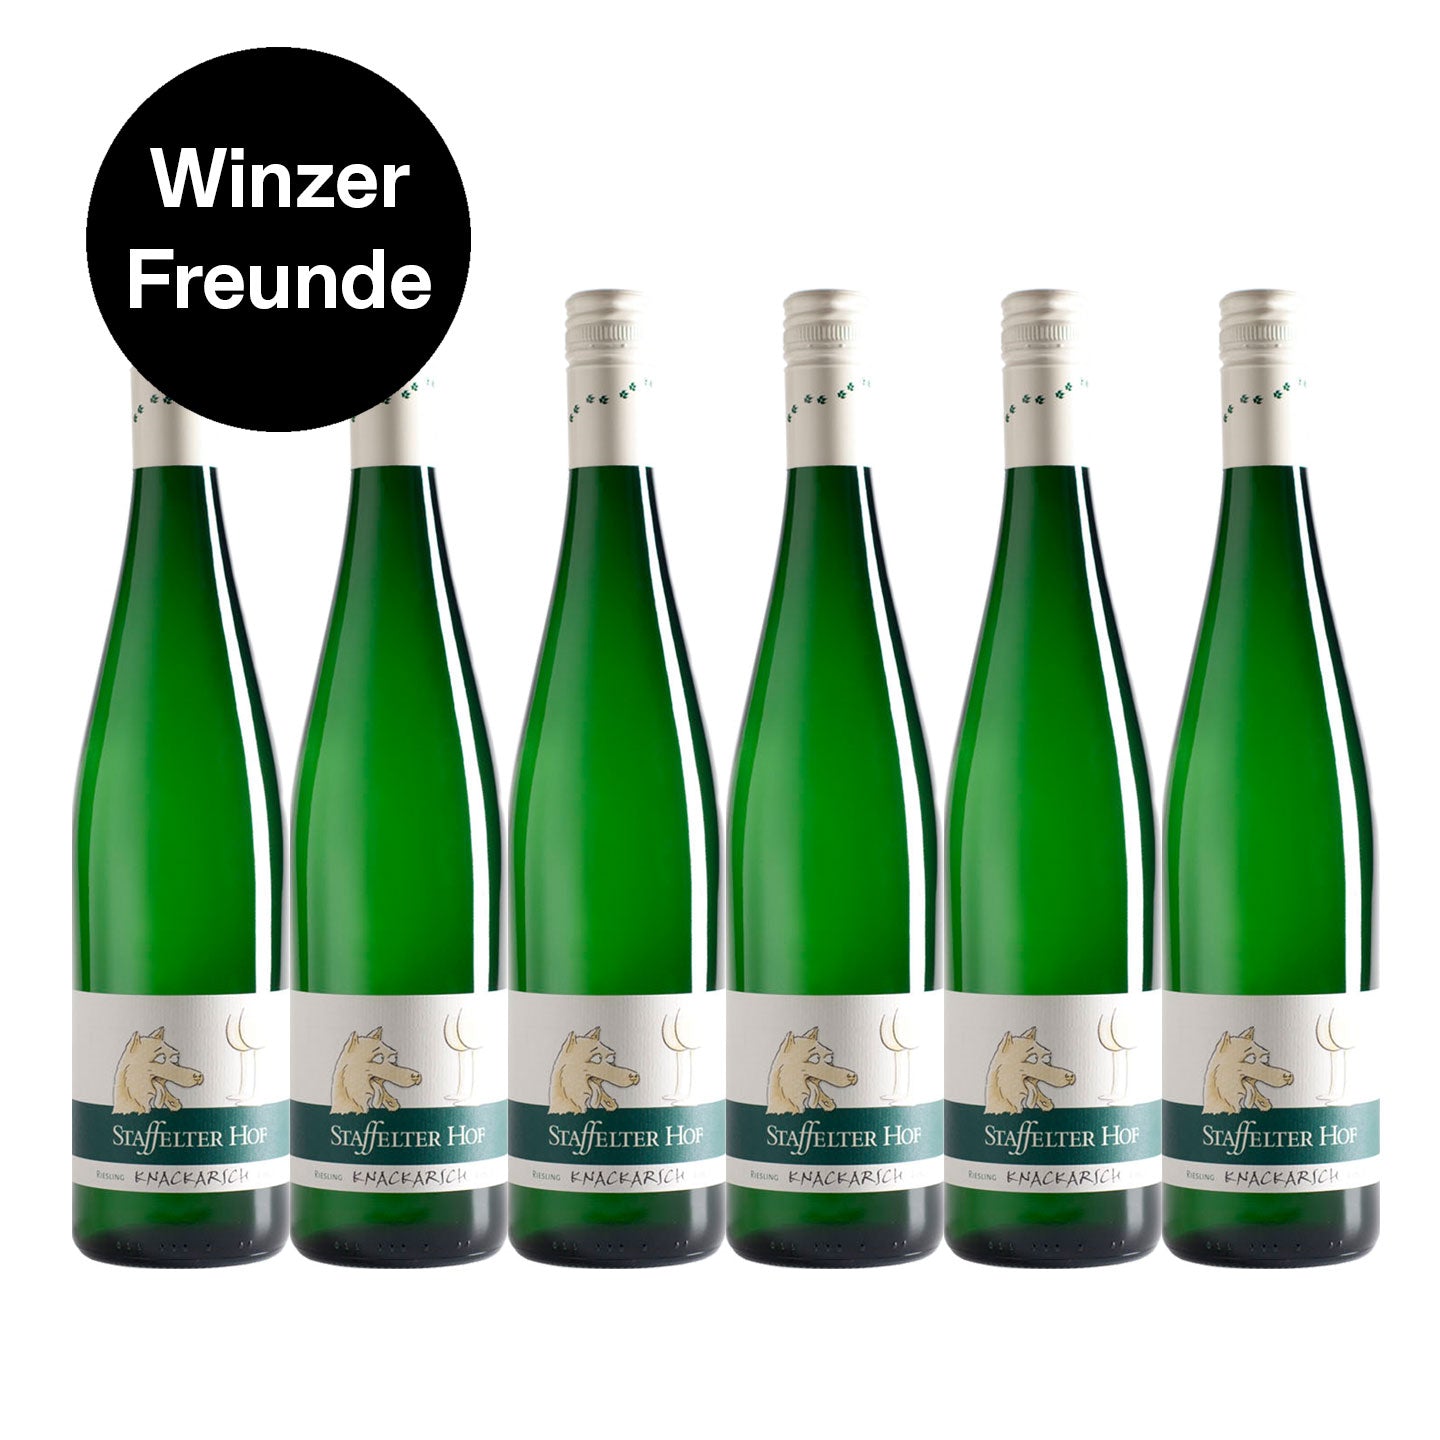 Riesling - "Knackarsch" - Vineyard Staffelter Hof - 8.5% alc